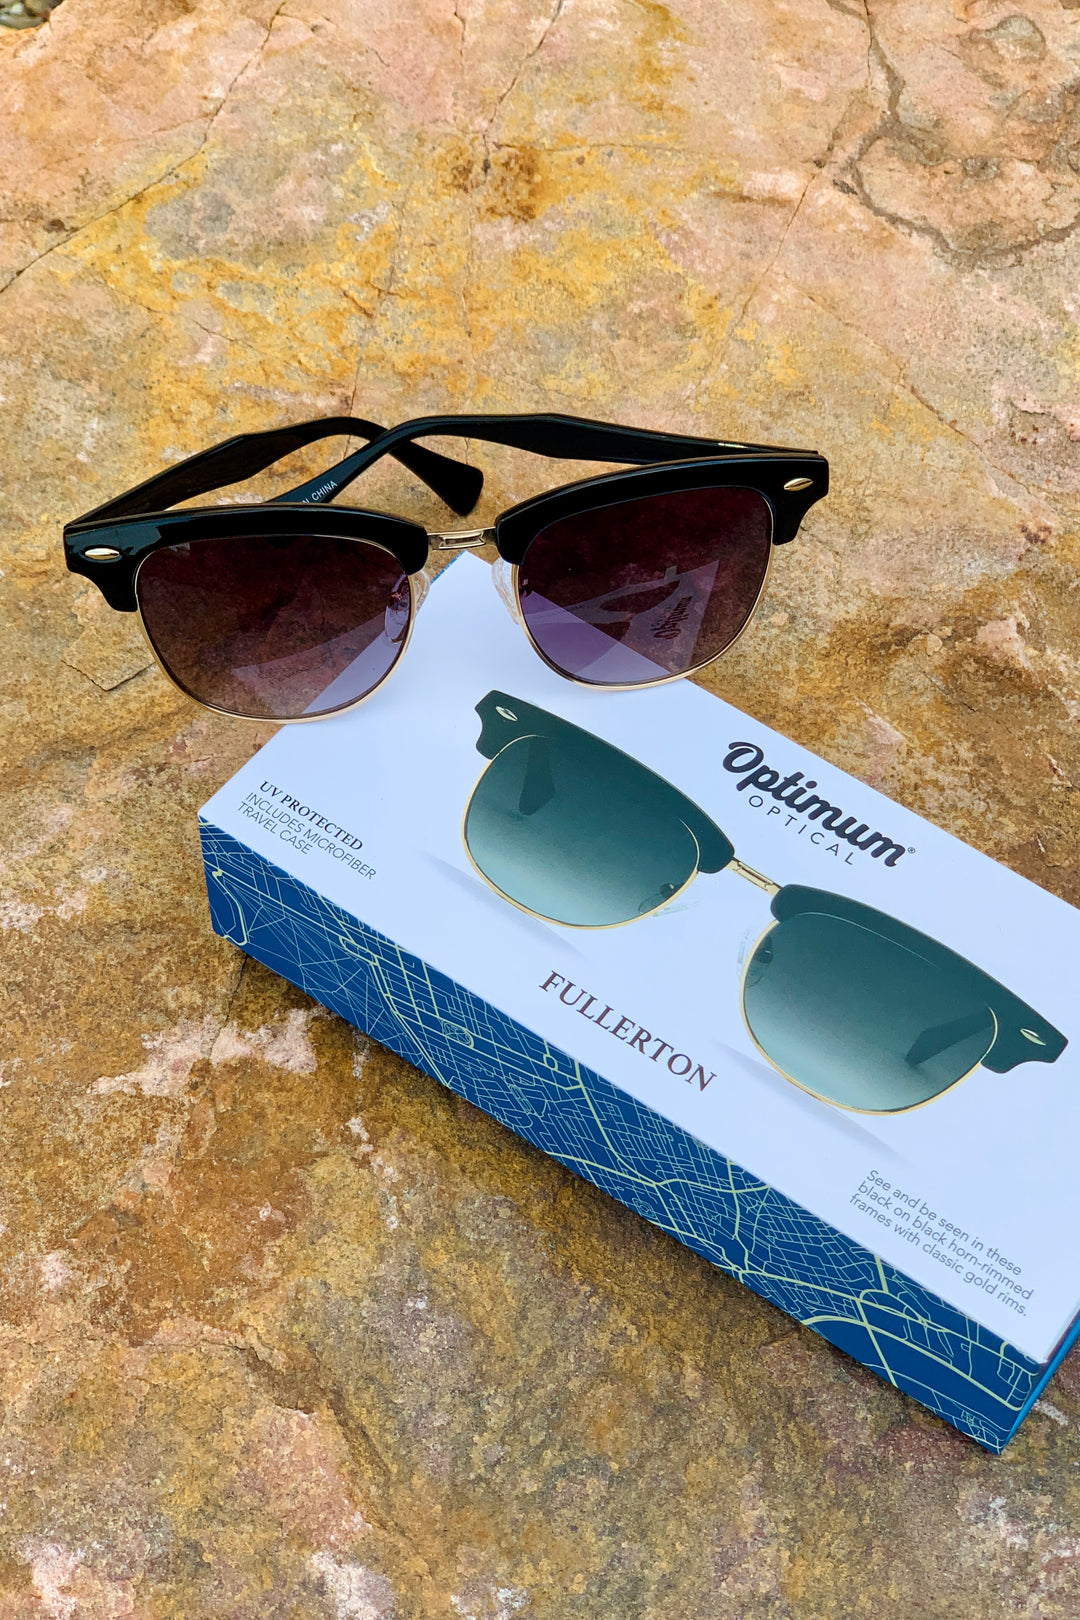 Optimum Optical Sunglasses - Fullerton